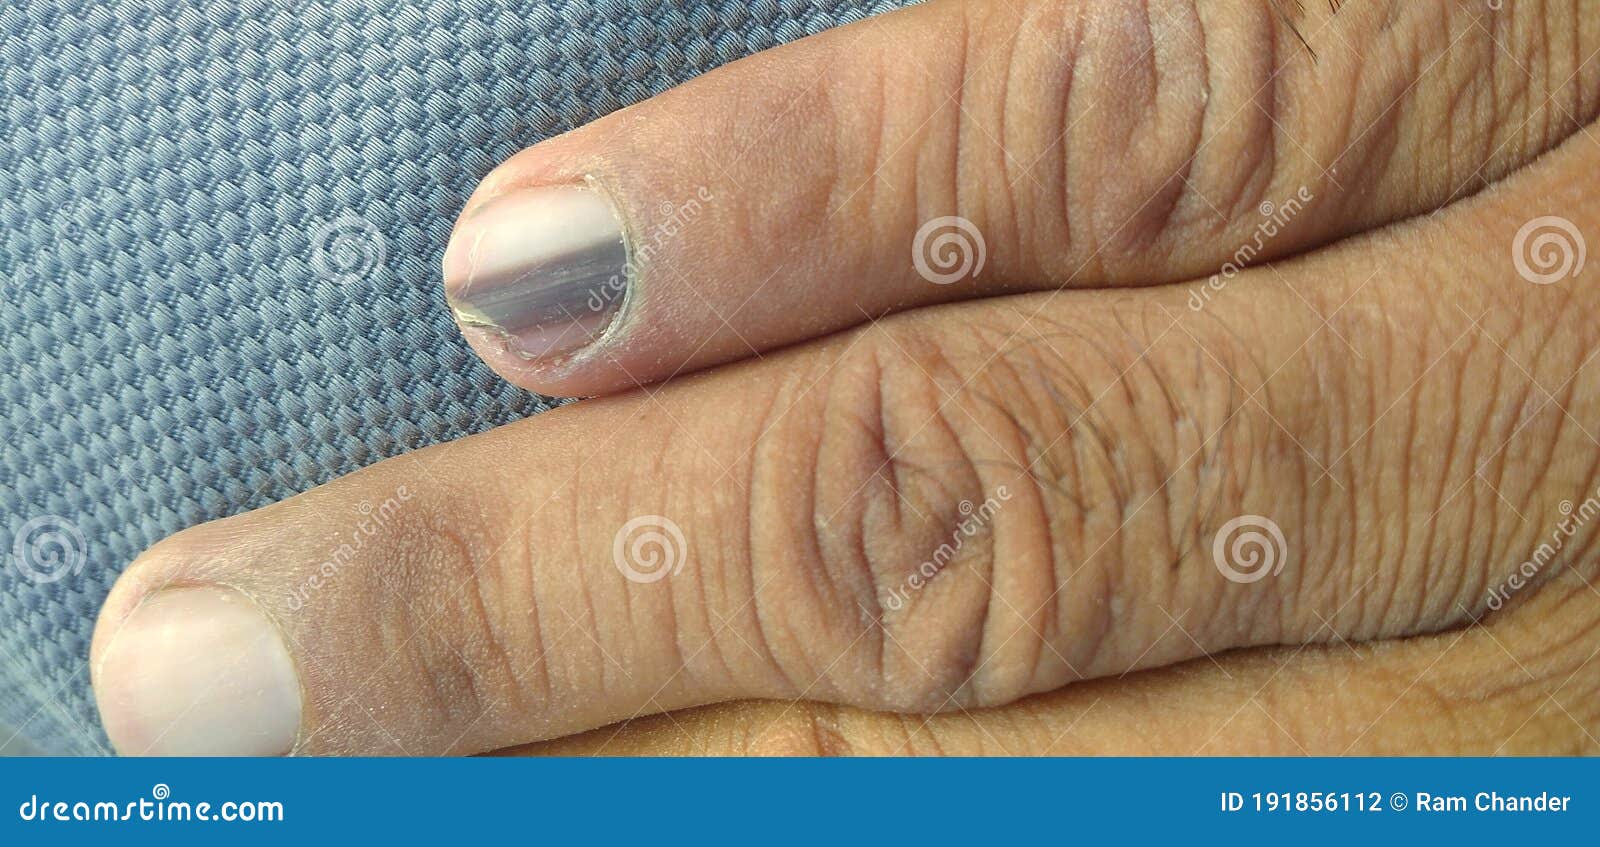 Black Line on Nails. Subungual Melanoma. Stock Photo - Image of care, line:  191856112